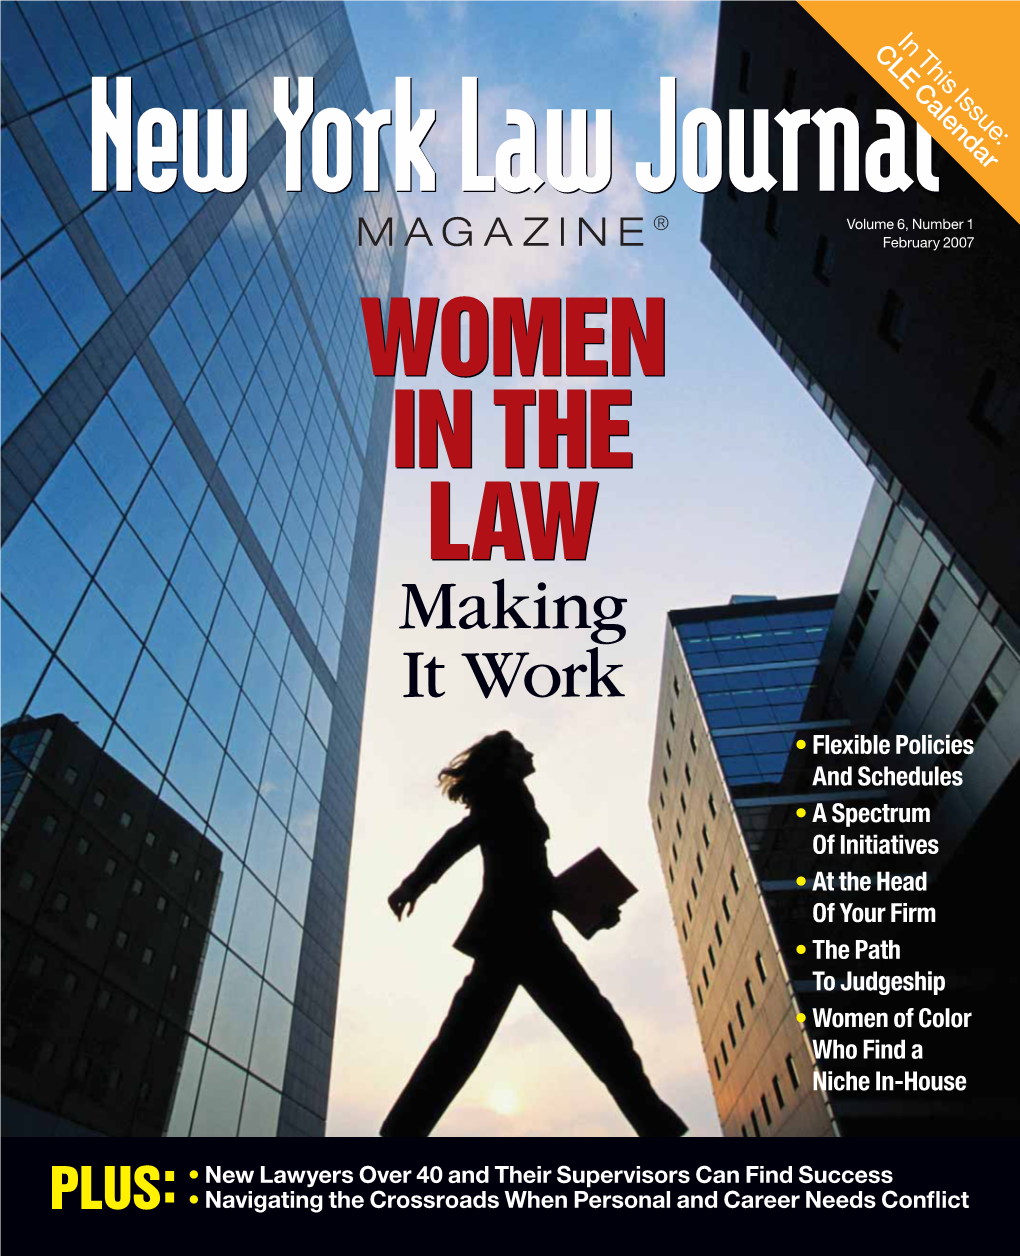 Women in the Law, Making It Work